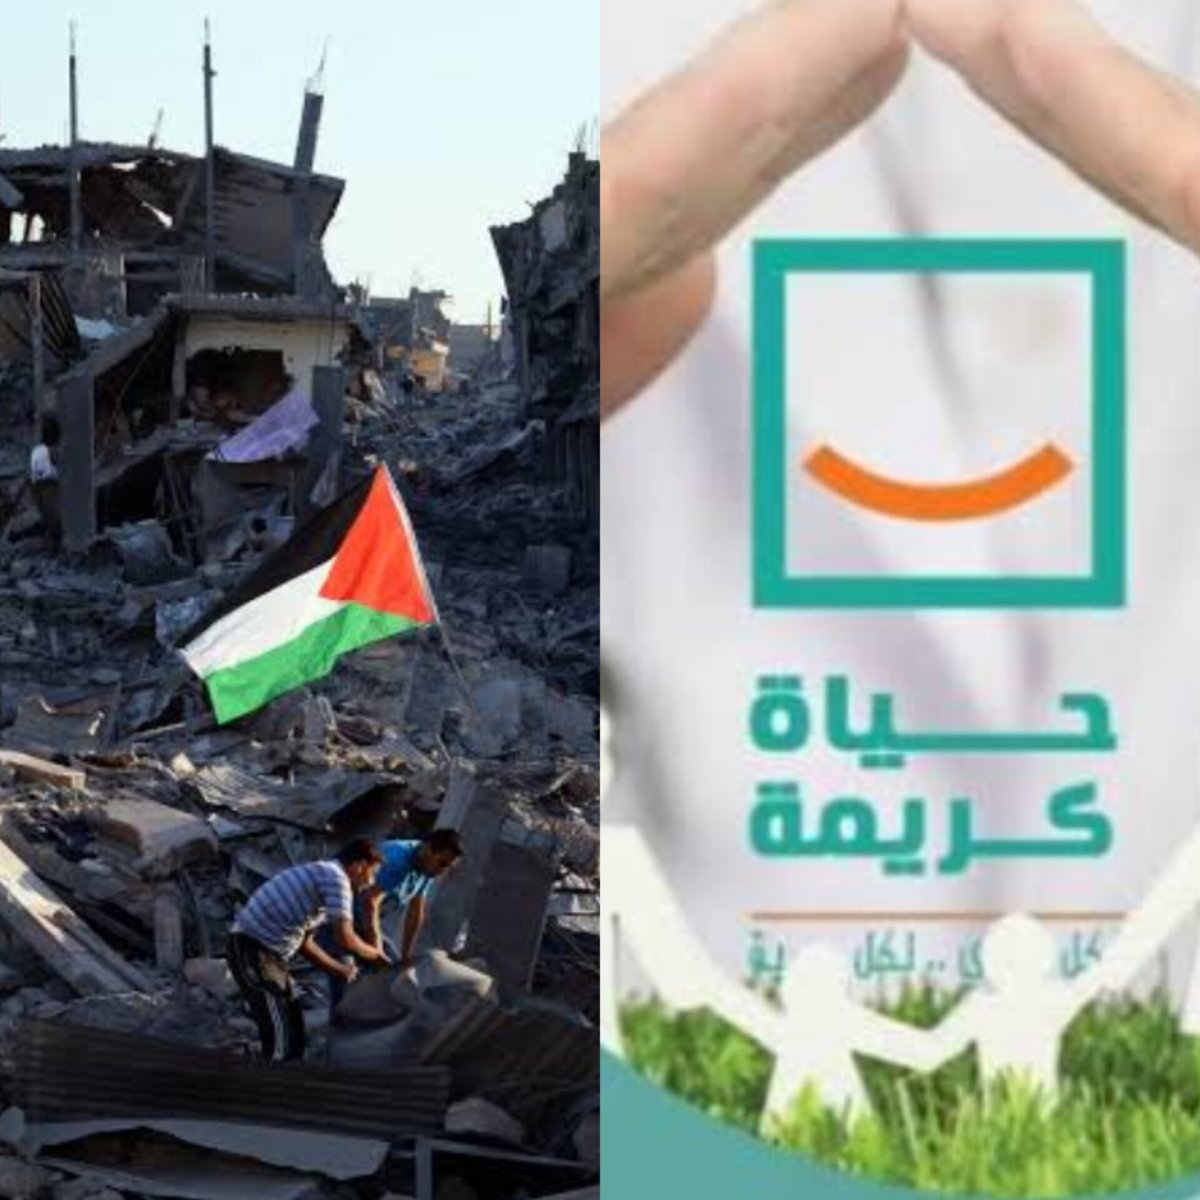 مؤسسة حياة كريمة تتضامن مع الشعب الفلسطينى وتقدم كافة أوجه الدعم الممكنة